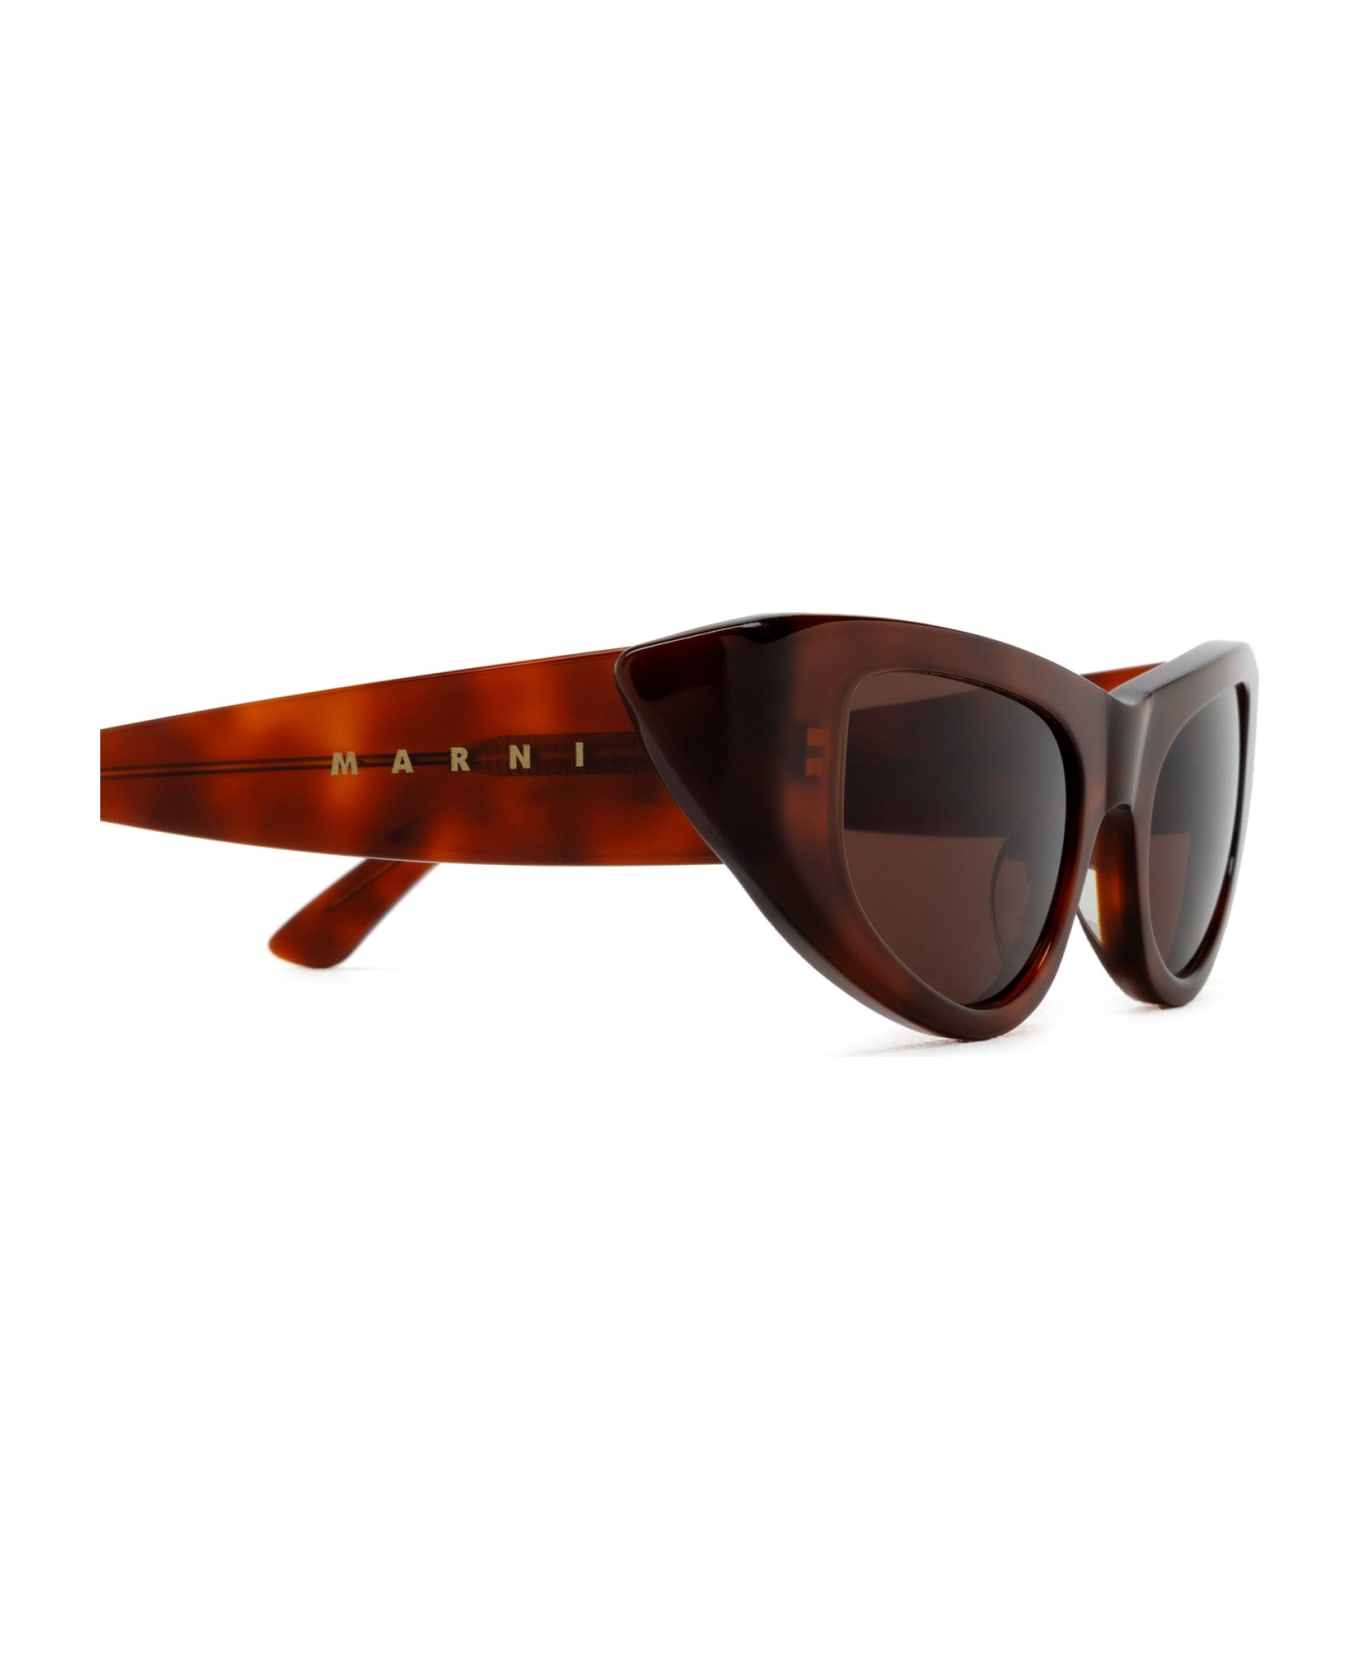 Marni Eyewear Netherworld Havana Sunglasses - Havana サングラス